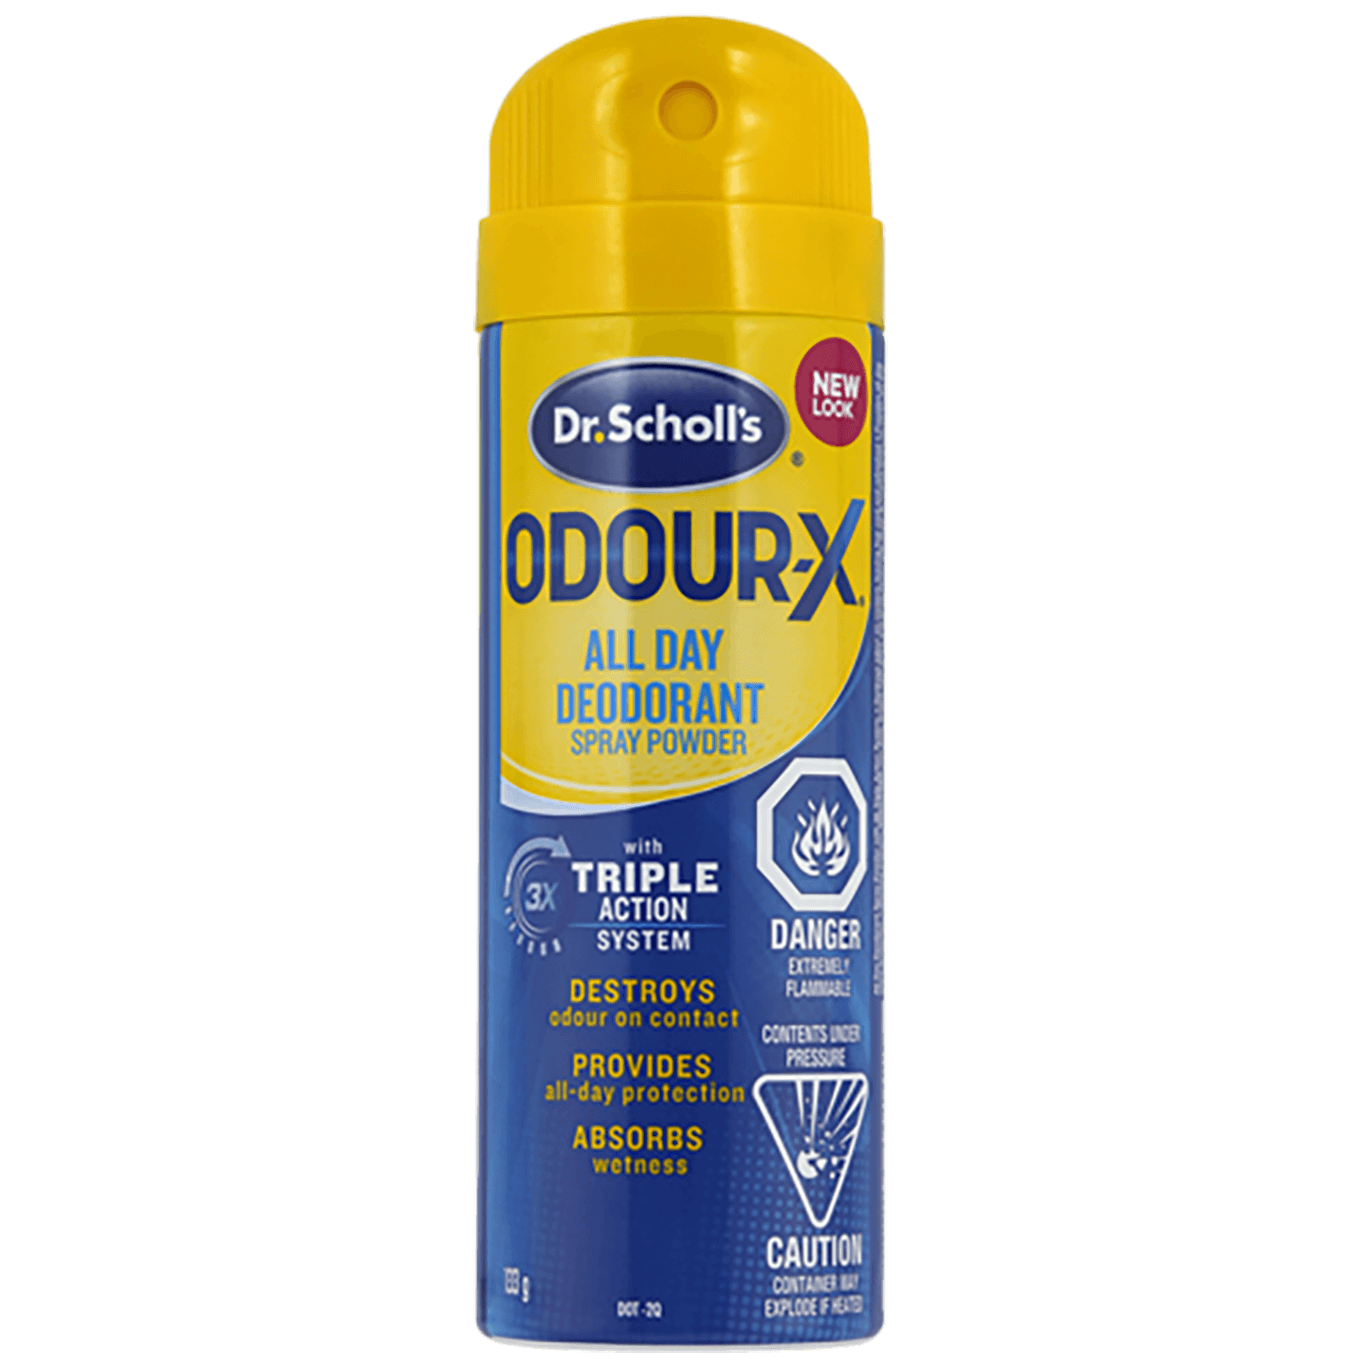 Odour-X All Day Deodorant Spray Powder